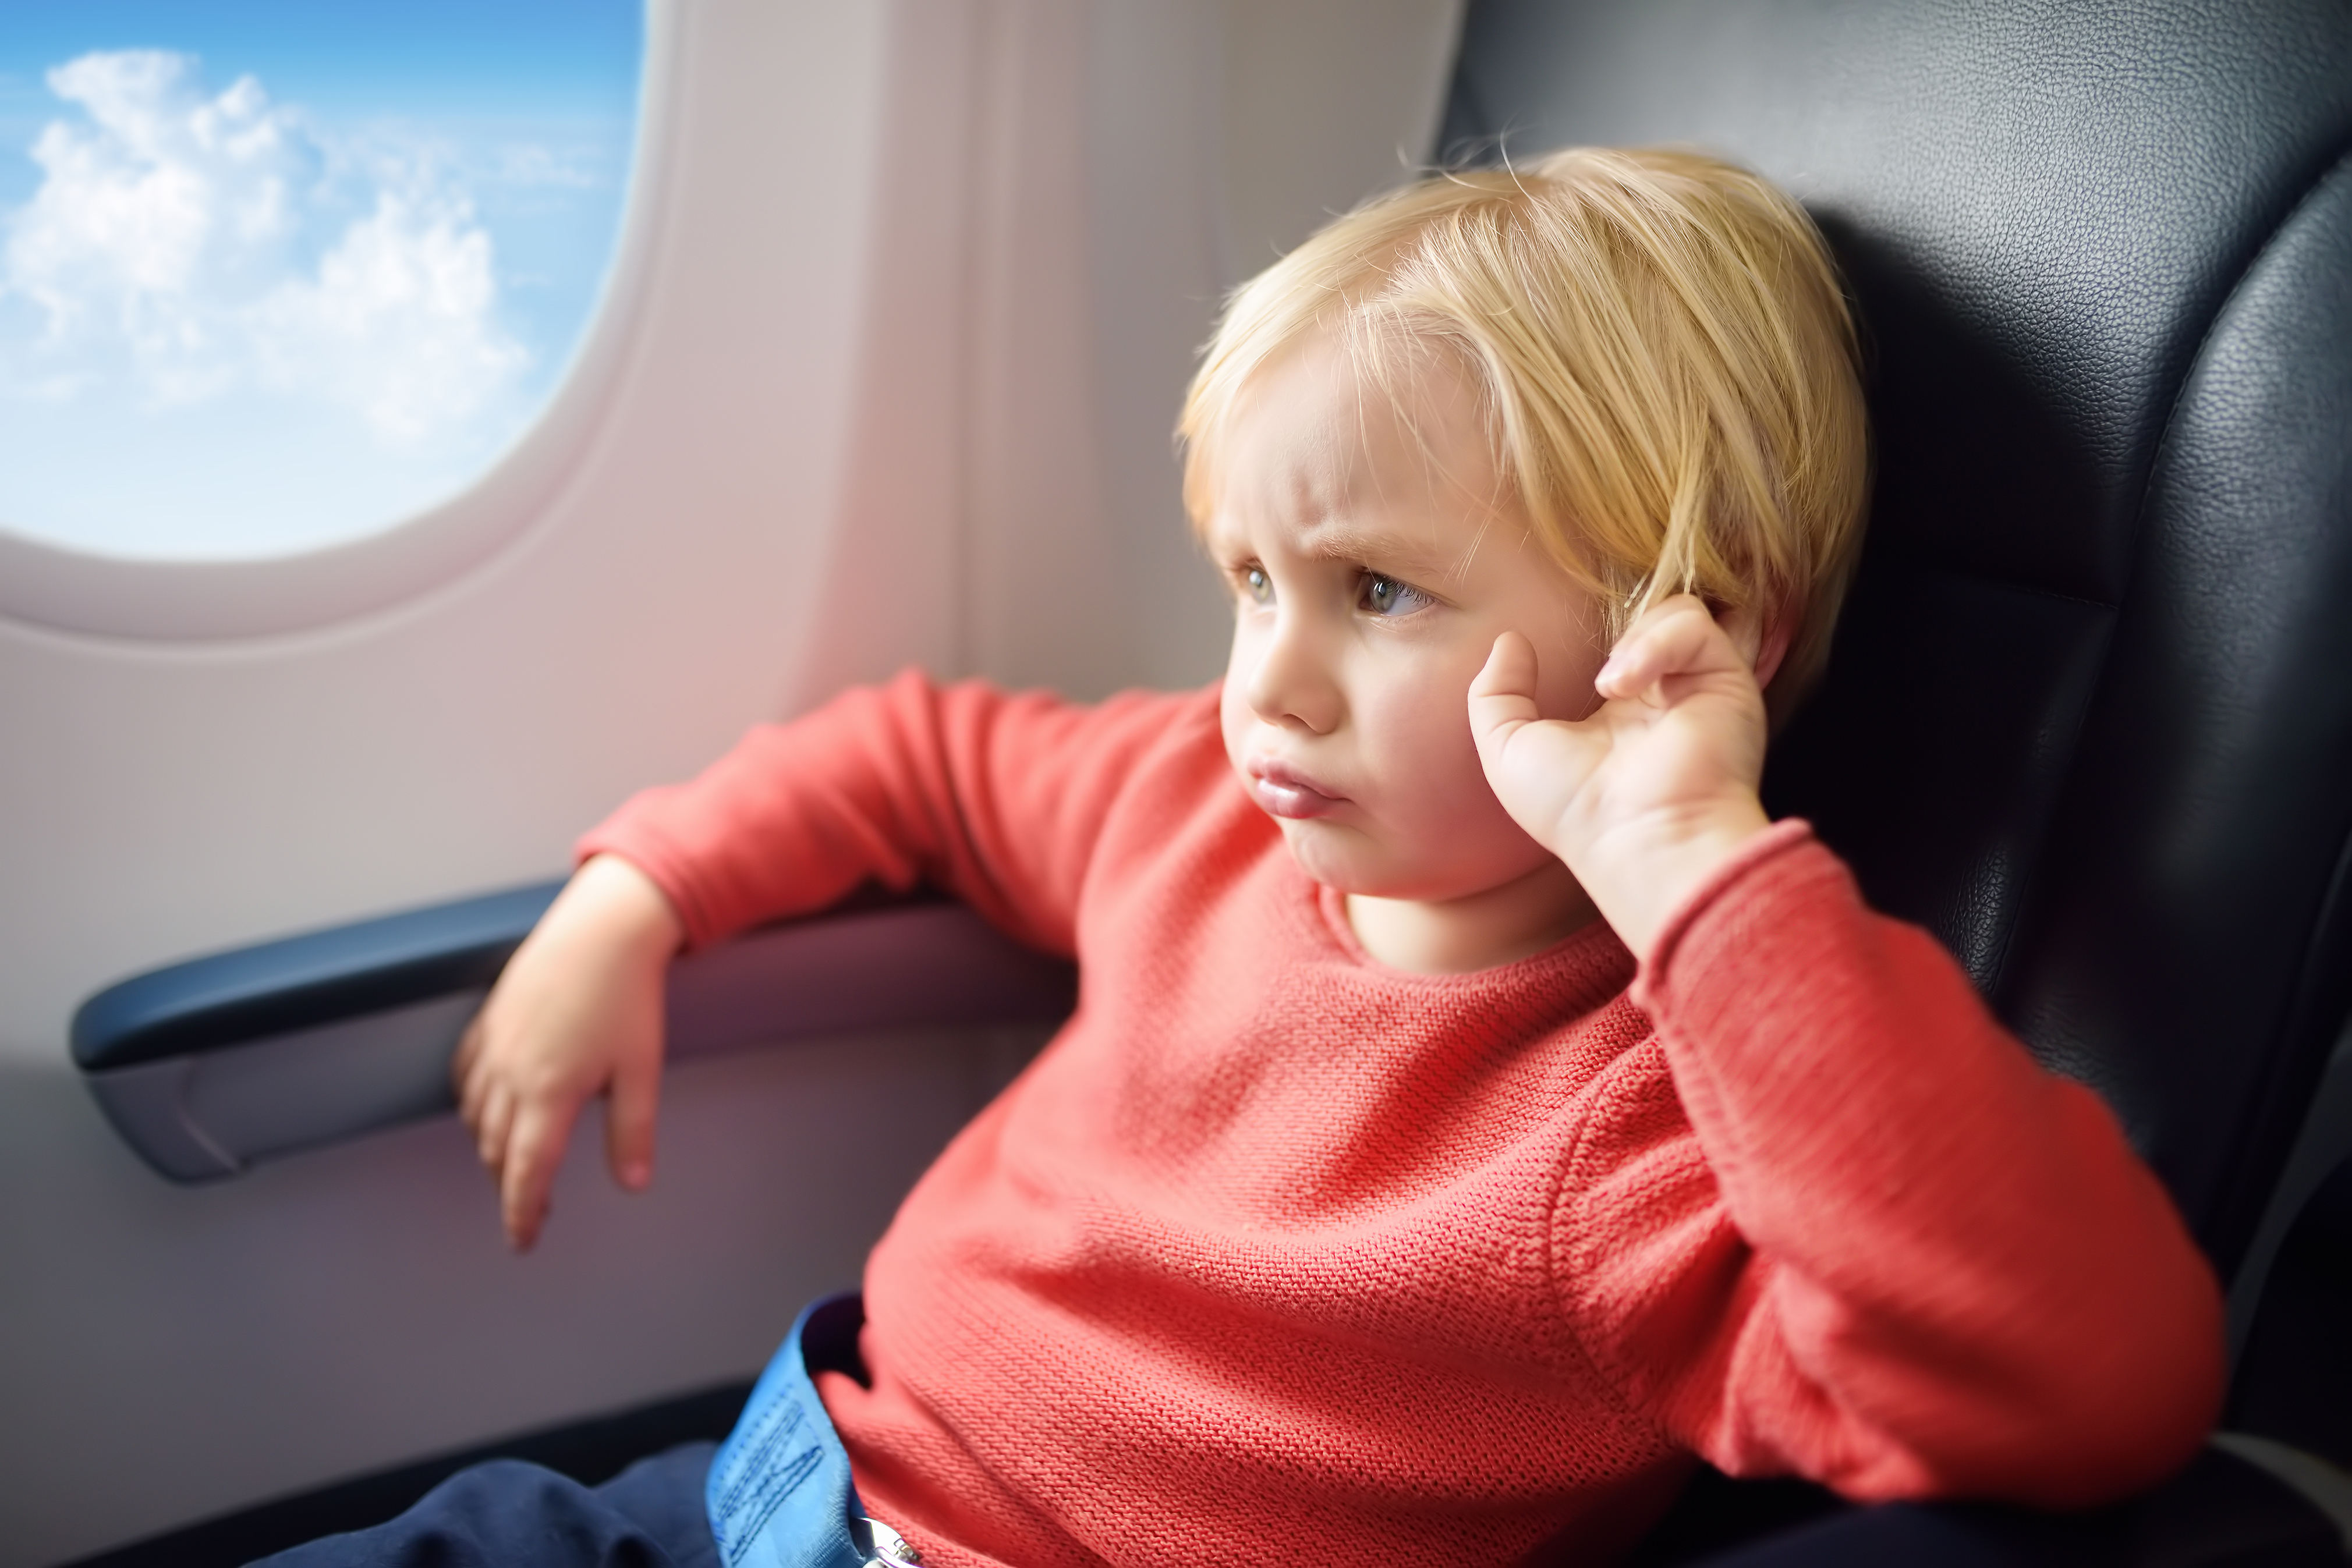 Ein aufgeregtes Kind in einem Flugzeug | Quelle: Shutterstock